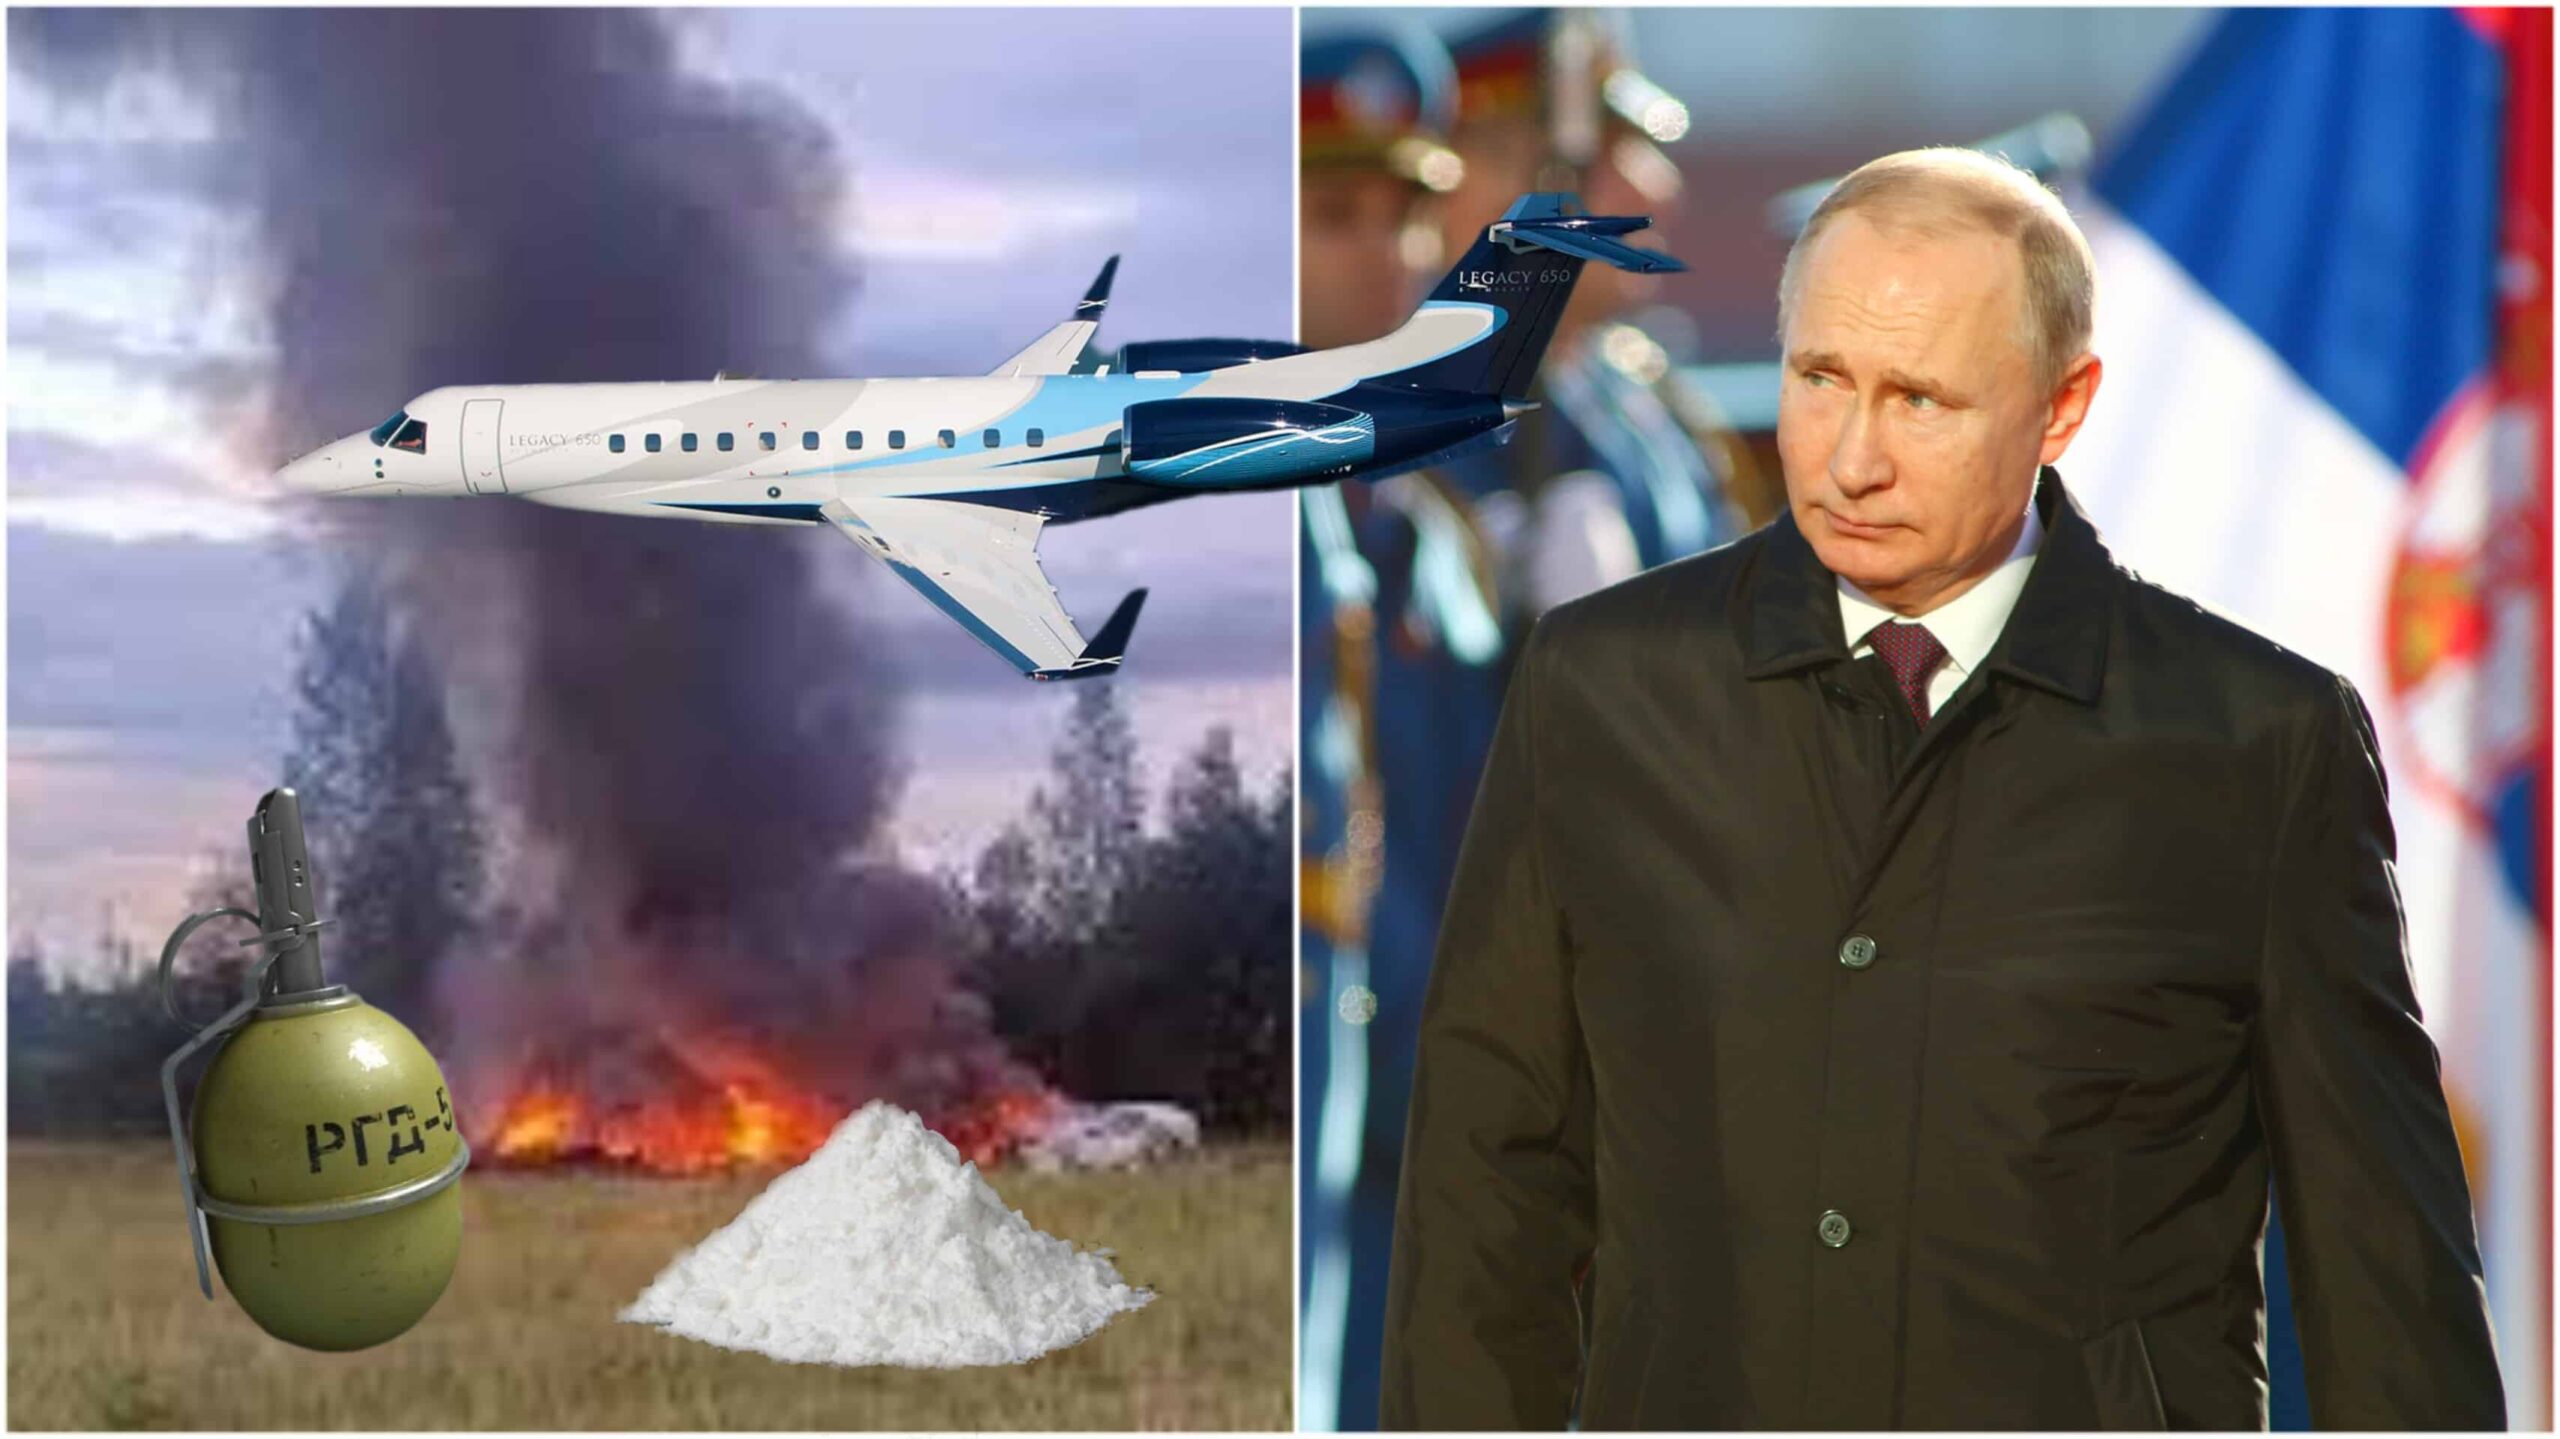 Putin siger, at kokain, granater forårsagede fatalt flystyrt af fjenden, ikke mord